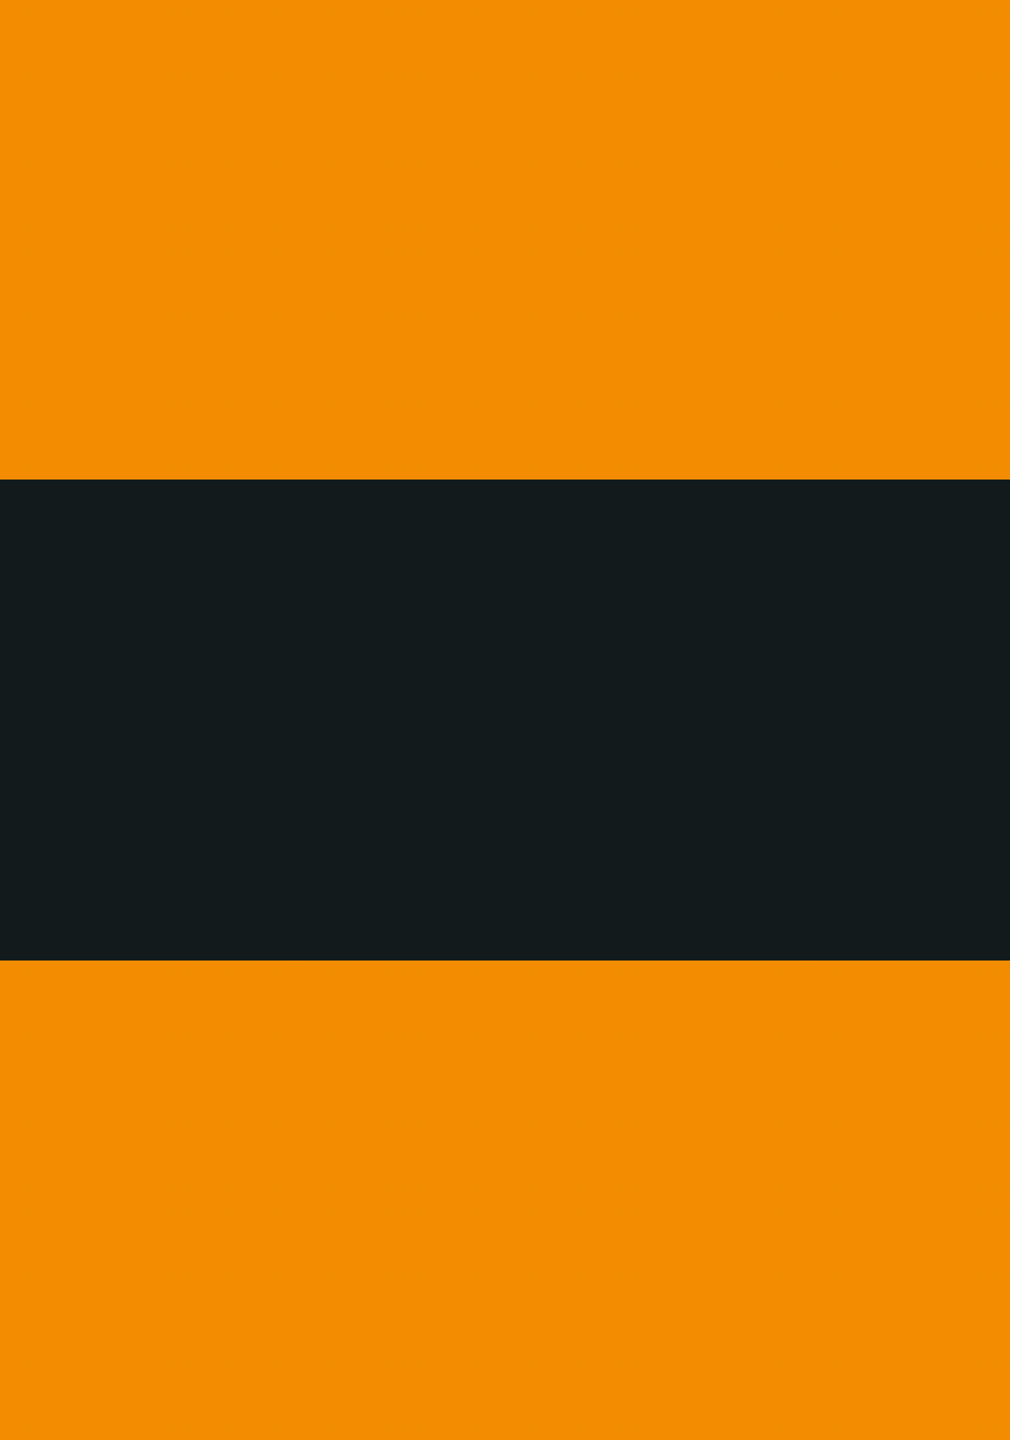 Se Lakridskonfekt - Orange og sort af Ten Valleys hos Illux.dk